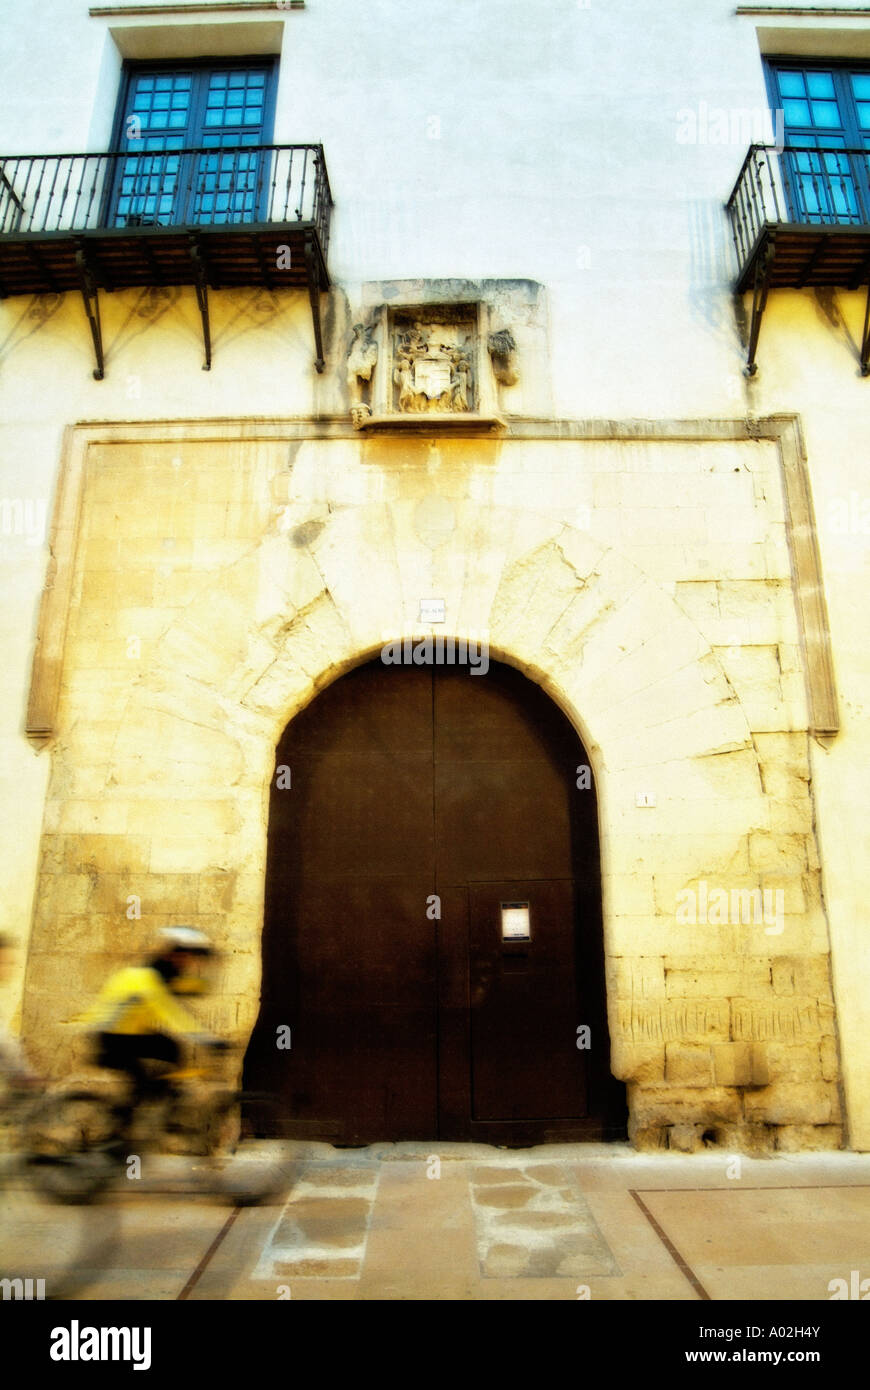 Le Palais Ducal de Borgia aka Palacio de San Duque. Gandía. La Safor District. Communauté de Valence. Espagne Banque D'Images